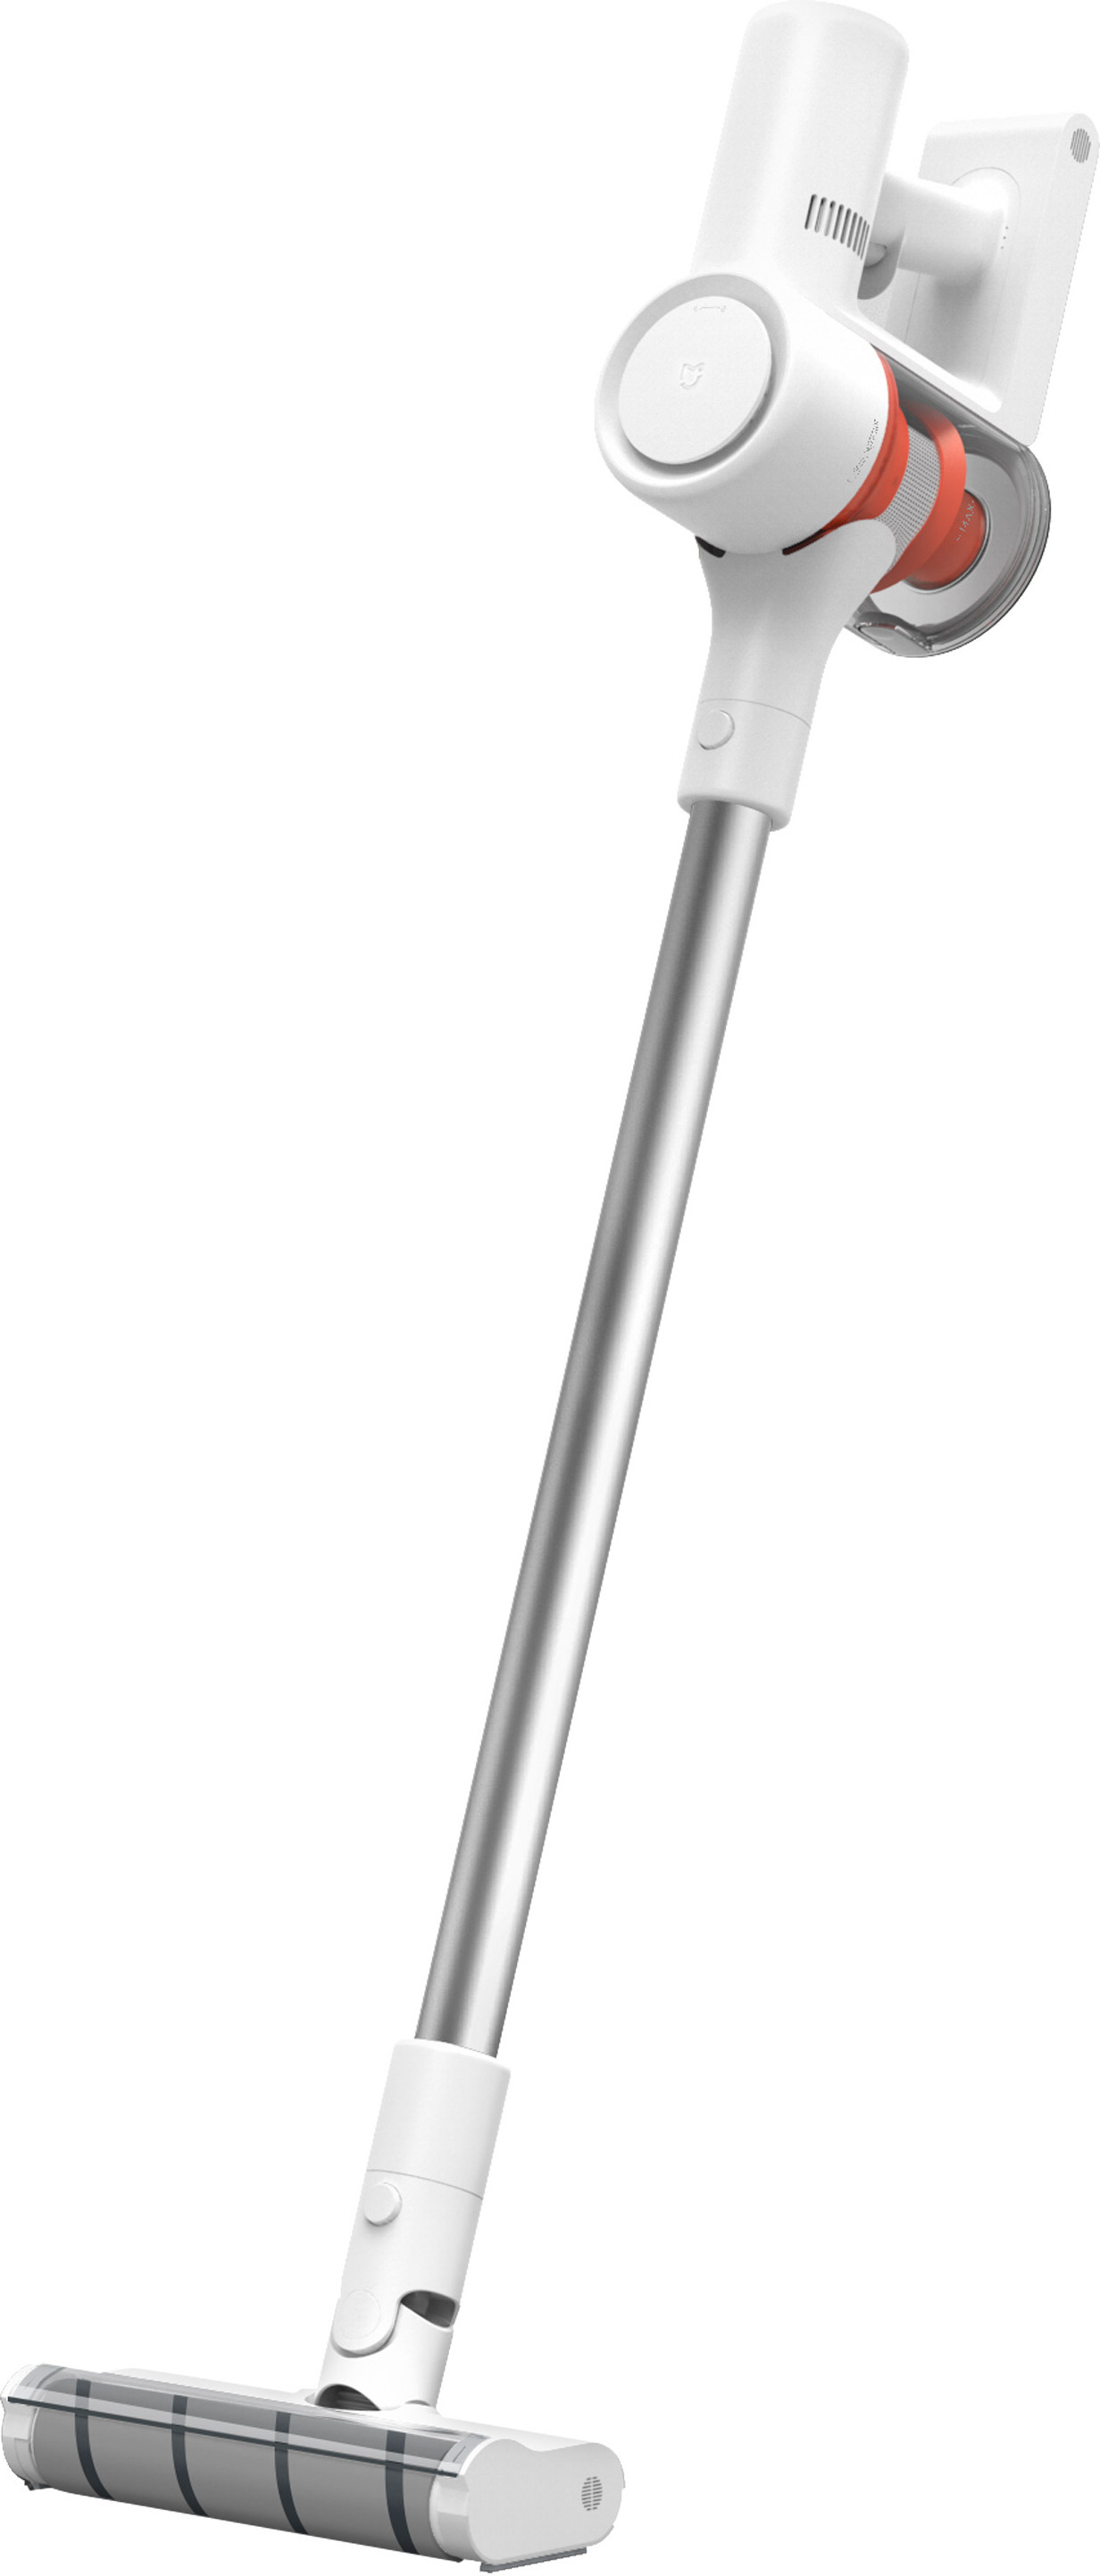 Вертикальные пылесосы ремез. Беспроводной пылесос Xiaomi Mijia 1c. Пылесос Xiaomi mi Handheld Vacuum. Пылесос Xiaomi Mijia scwxcq02zhm. Вертикальный пылесос Xiaomi mi Handheld Vacuum Cleaner.